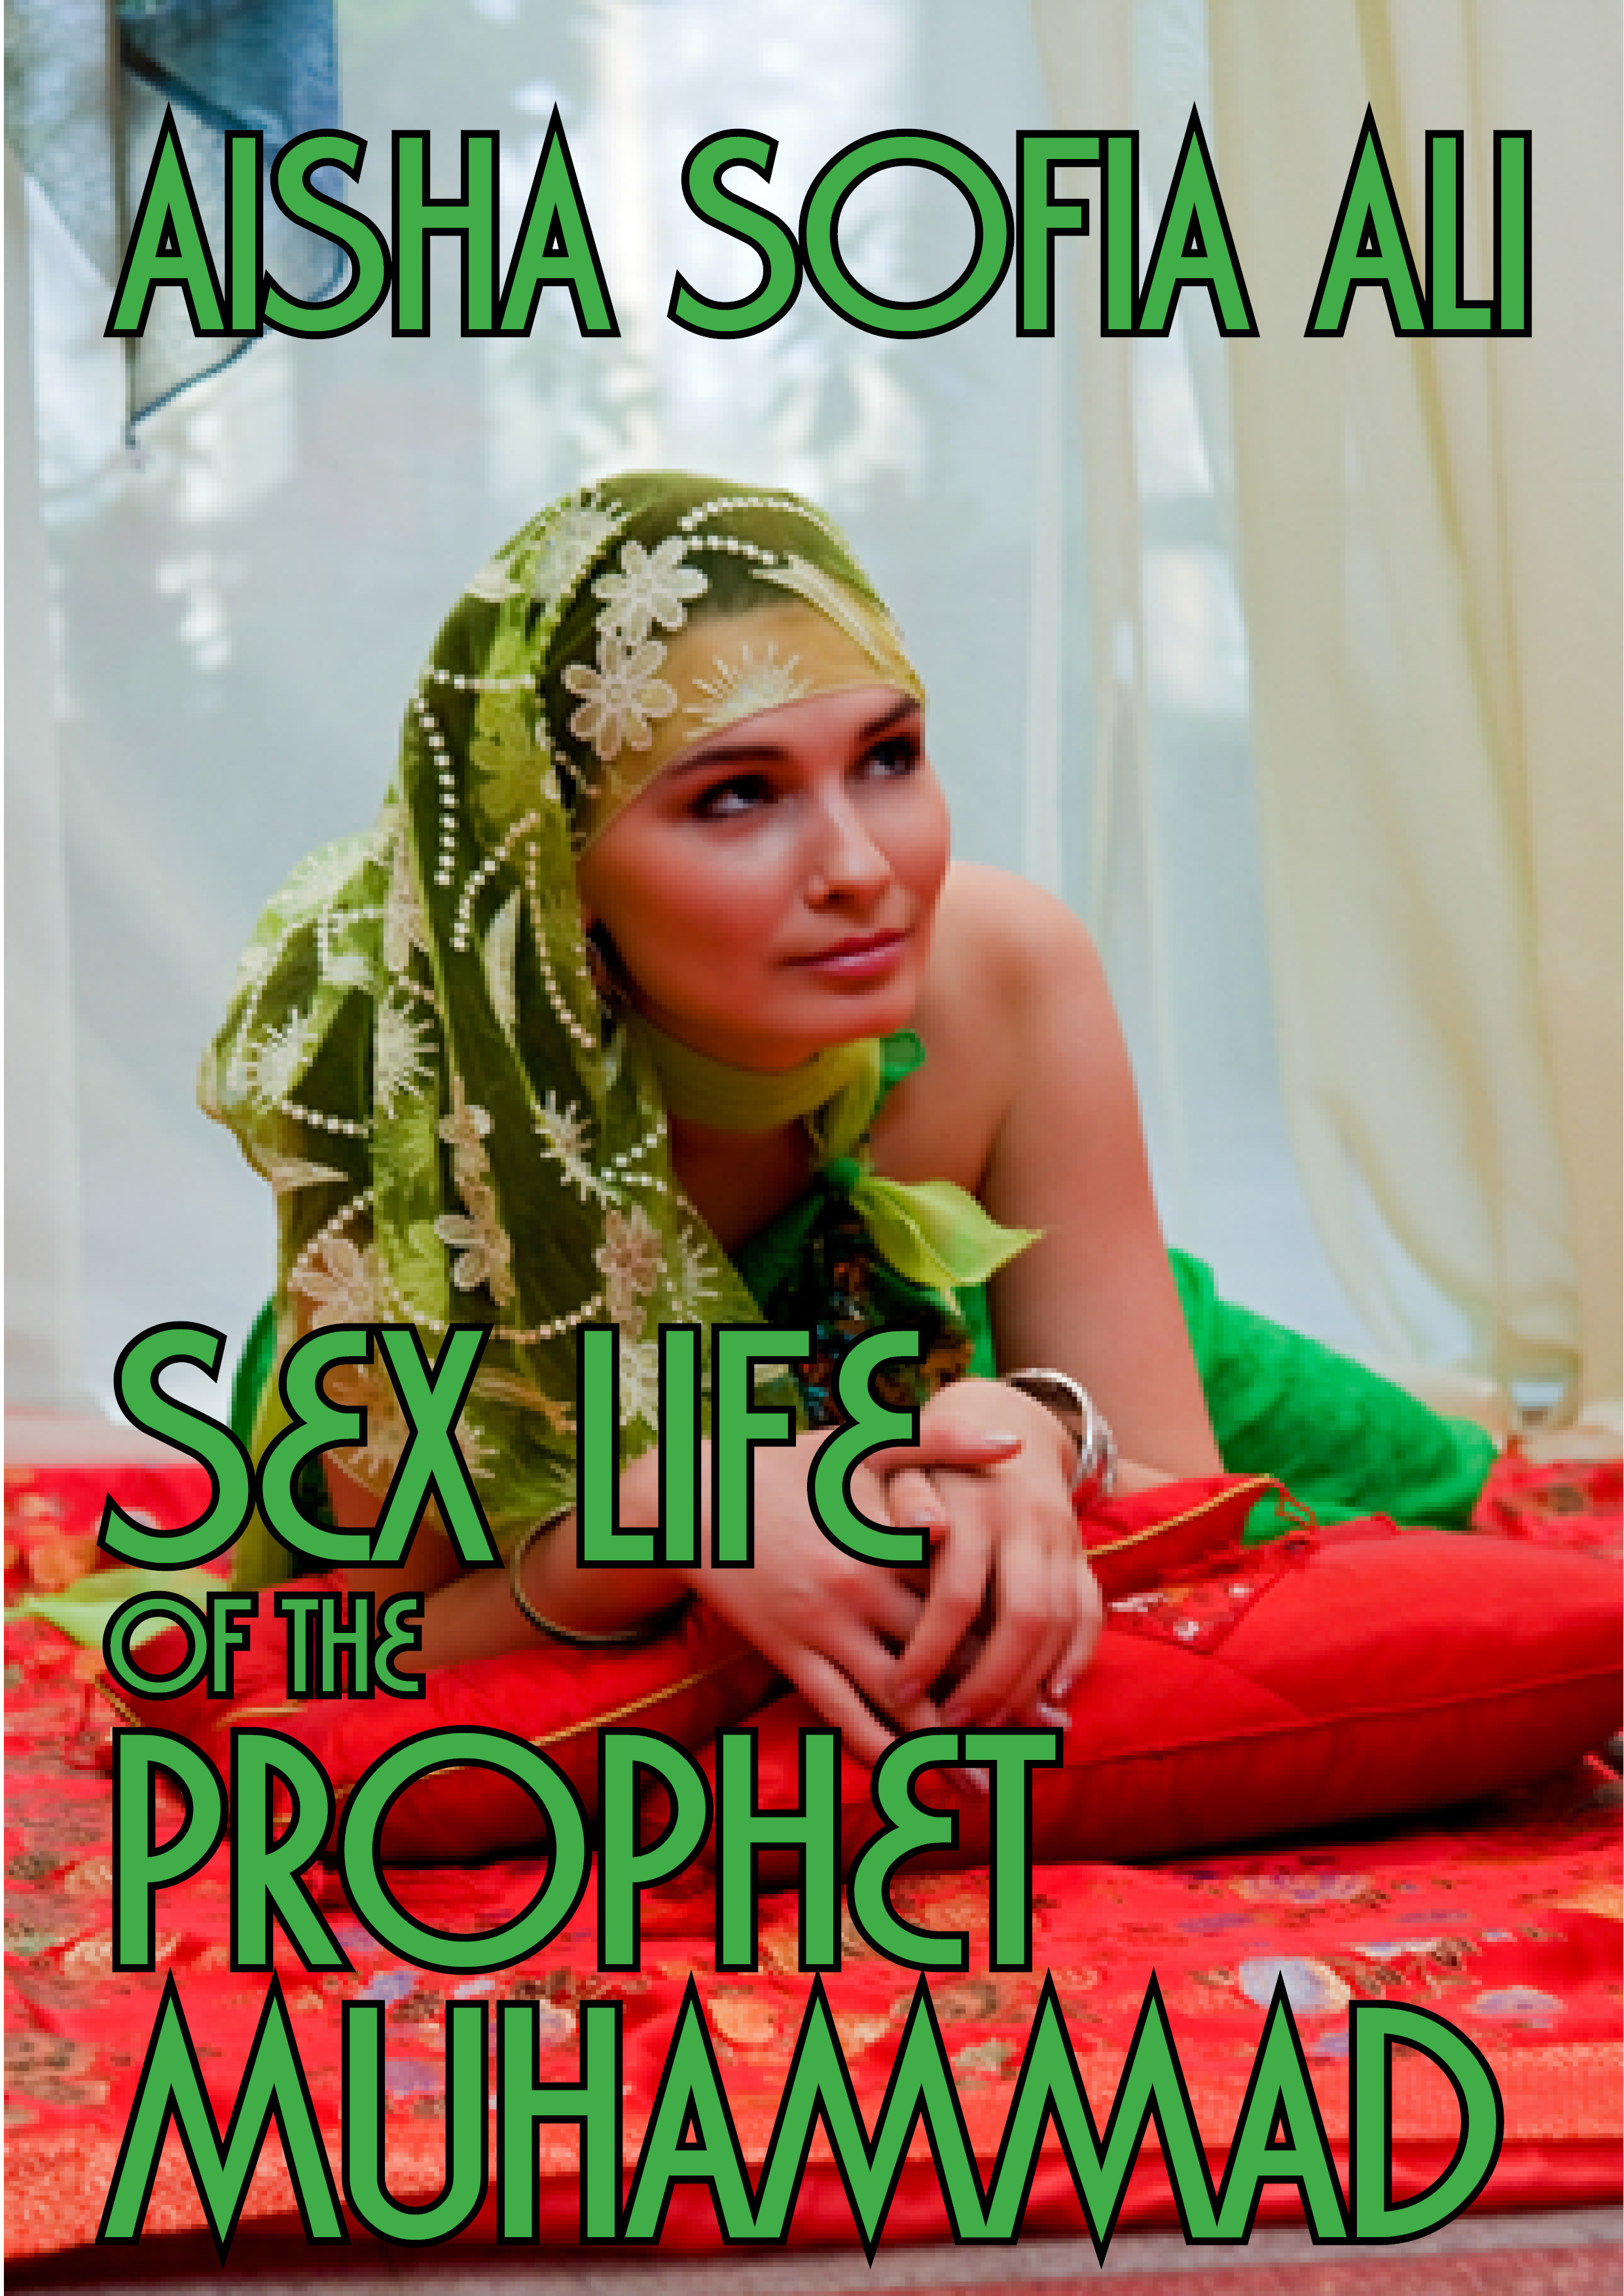 Muhammadx X X X - Smashwords Sex Life Of The Prophet Muhammad A Book Aisha - XXXPicss.com